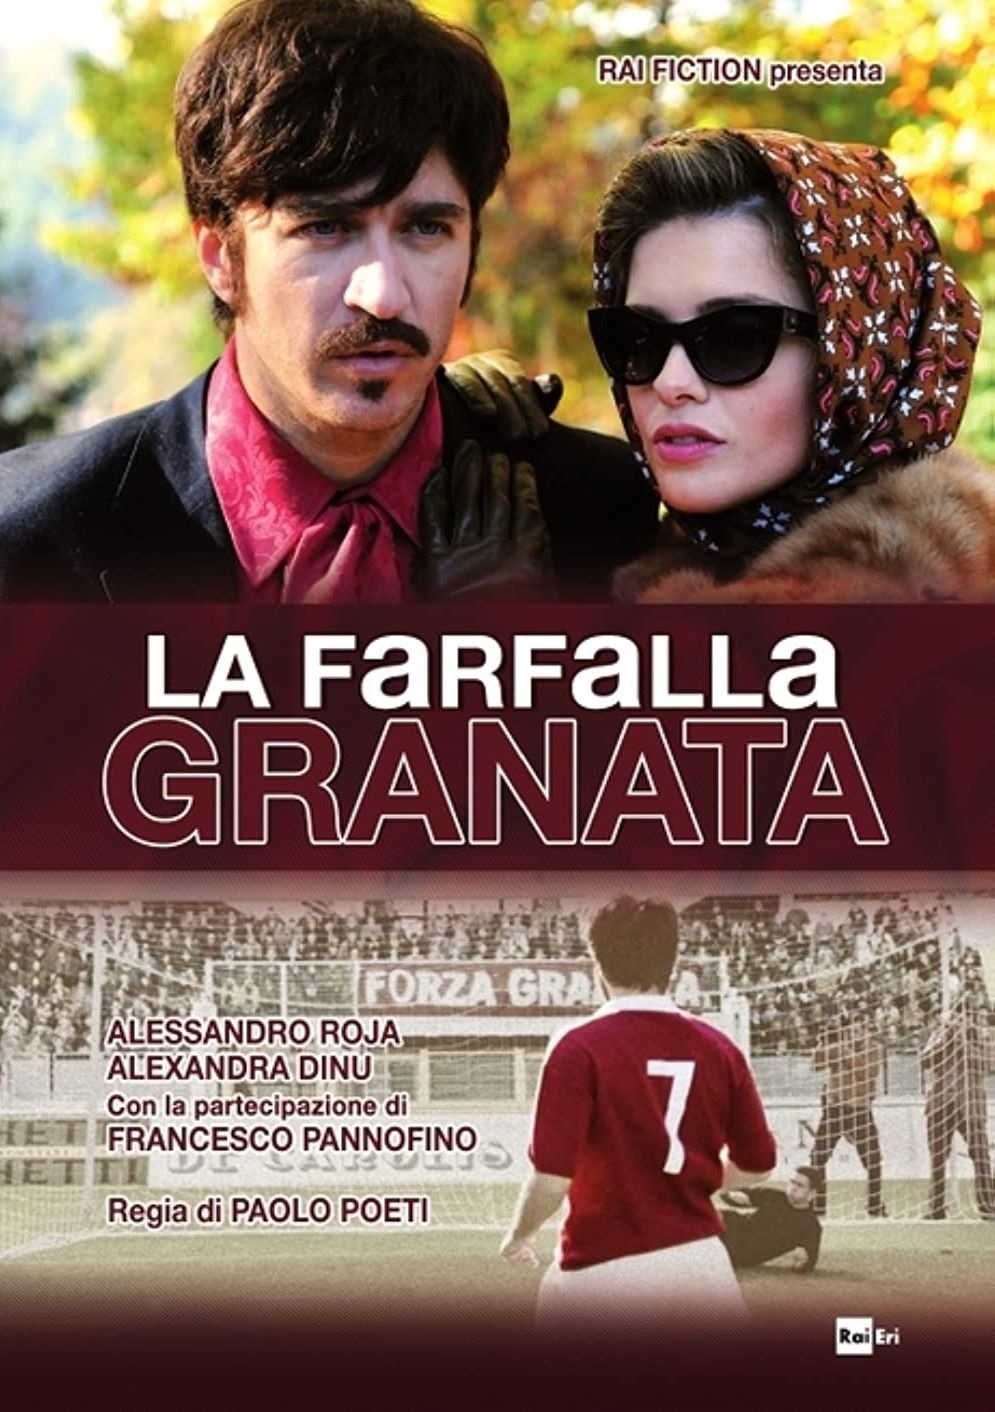 La farfalla granata (2013)